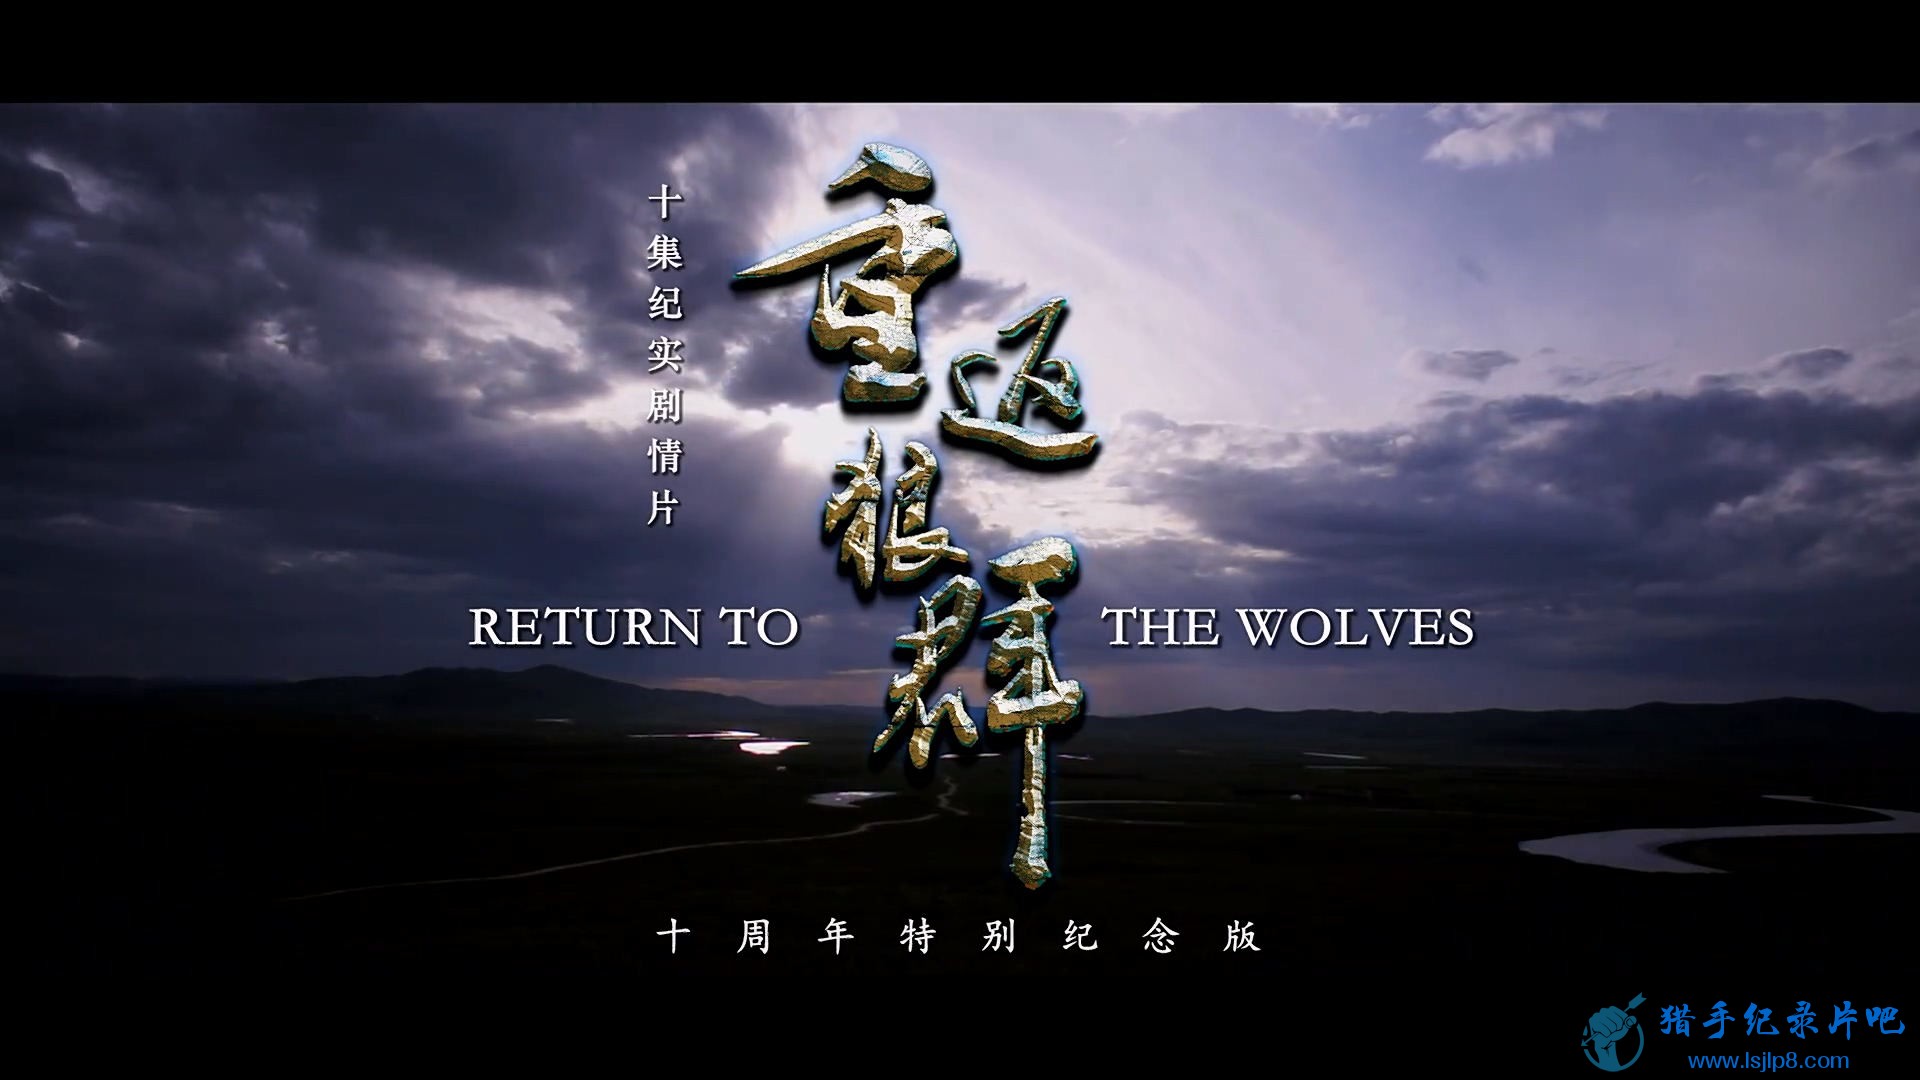 طȺ 10ر.Return.to.the.Wolves.2021.E01.WEB-DL.1080p.dyttxz.net.jpg